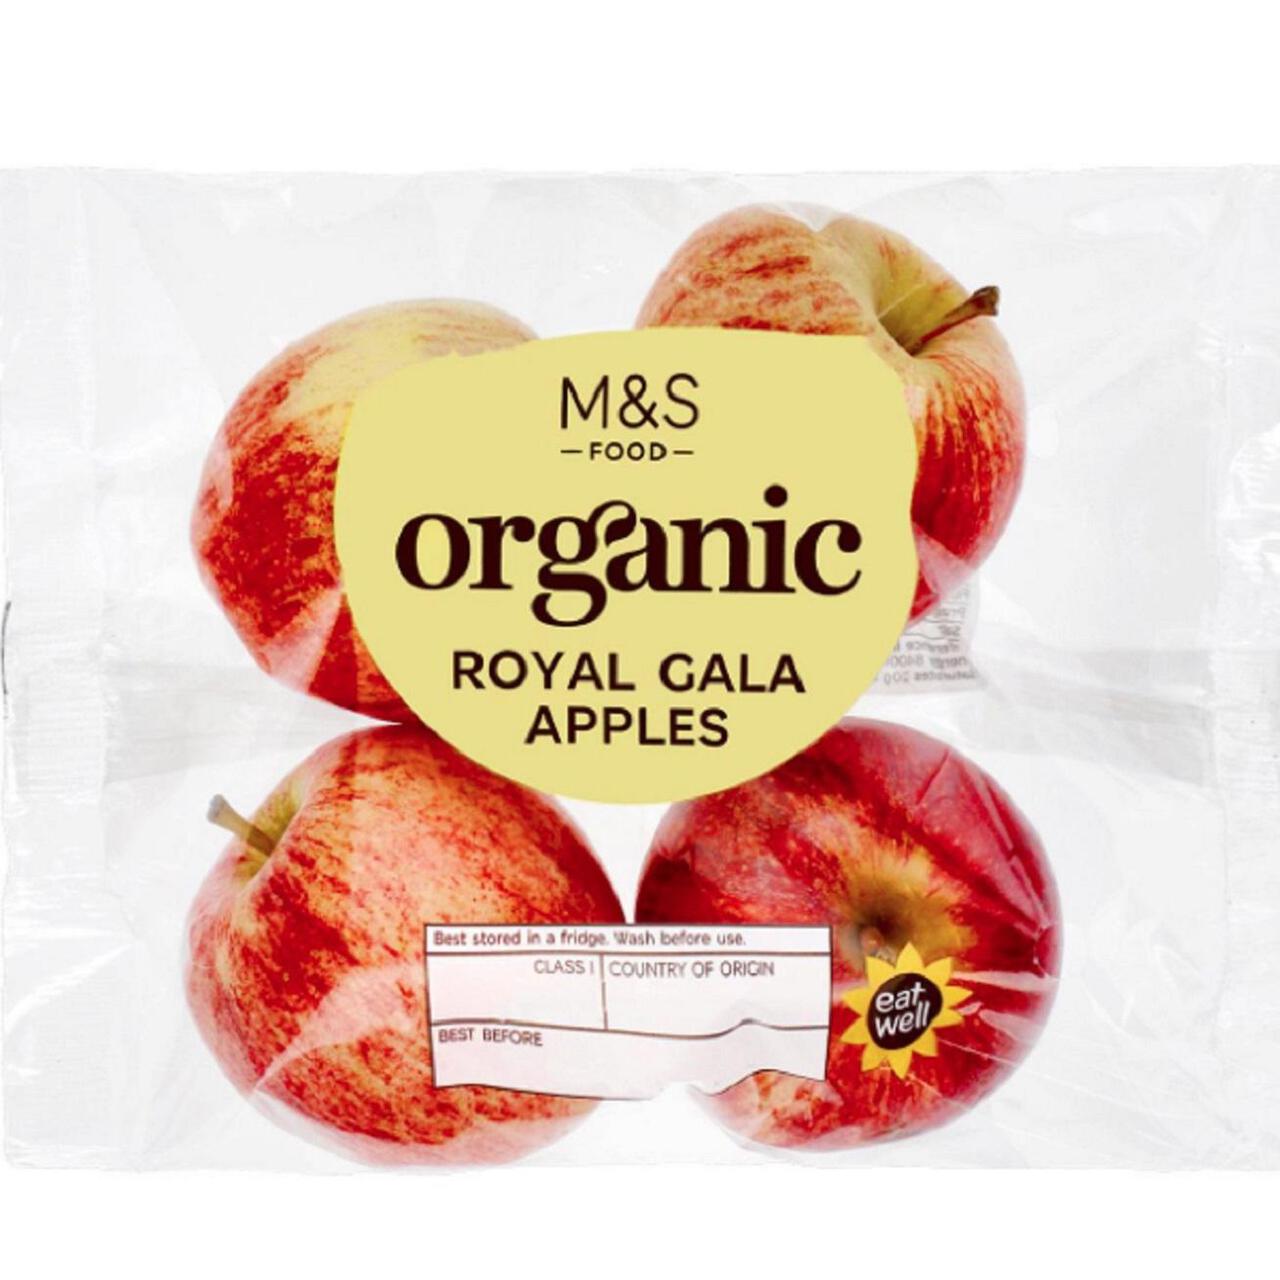 M&S British Organic Royal Gala Apples 4 per pack